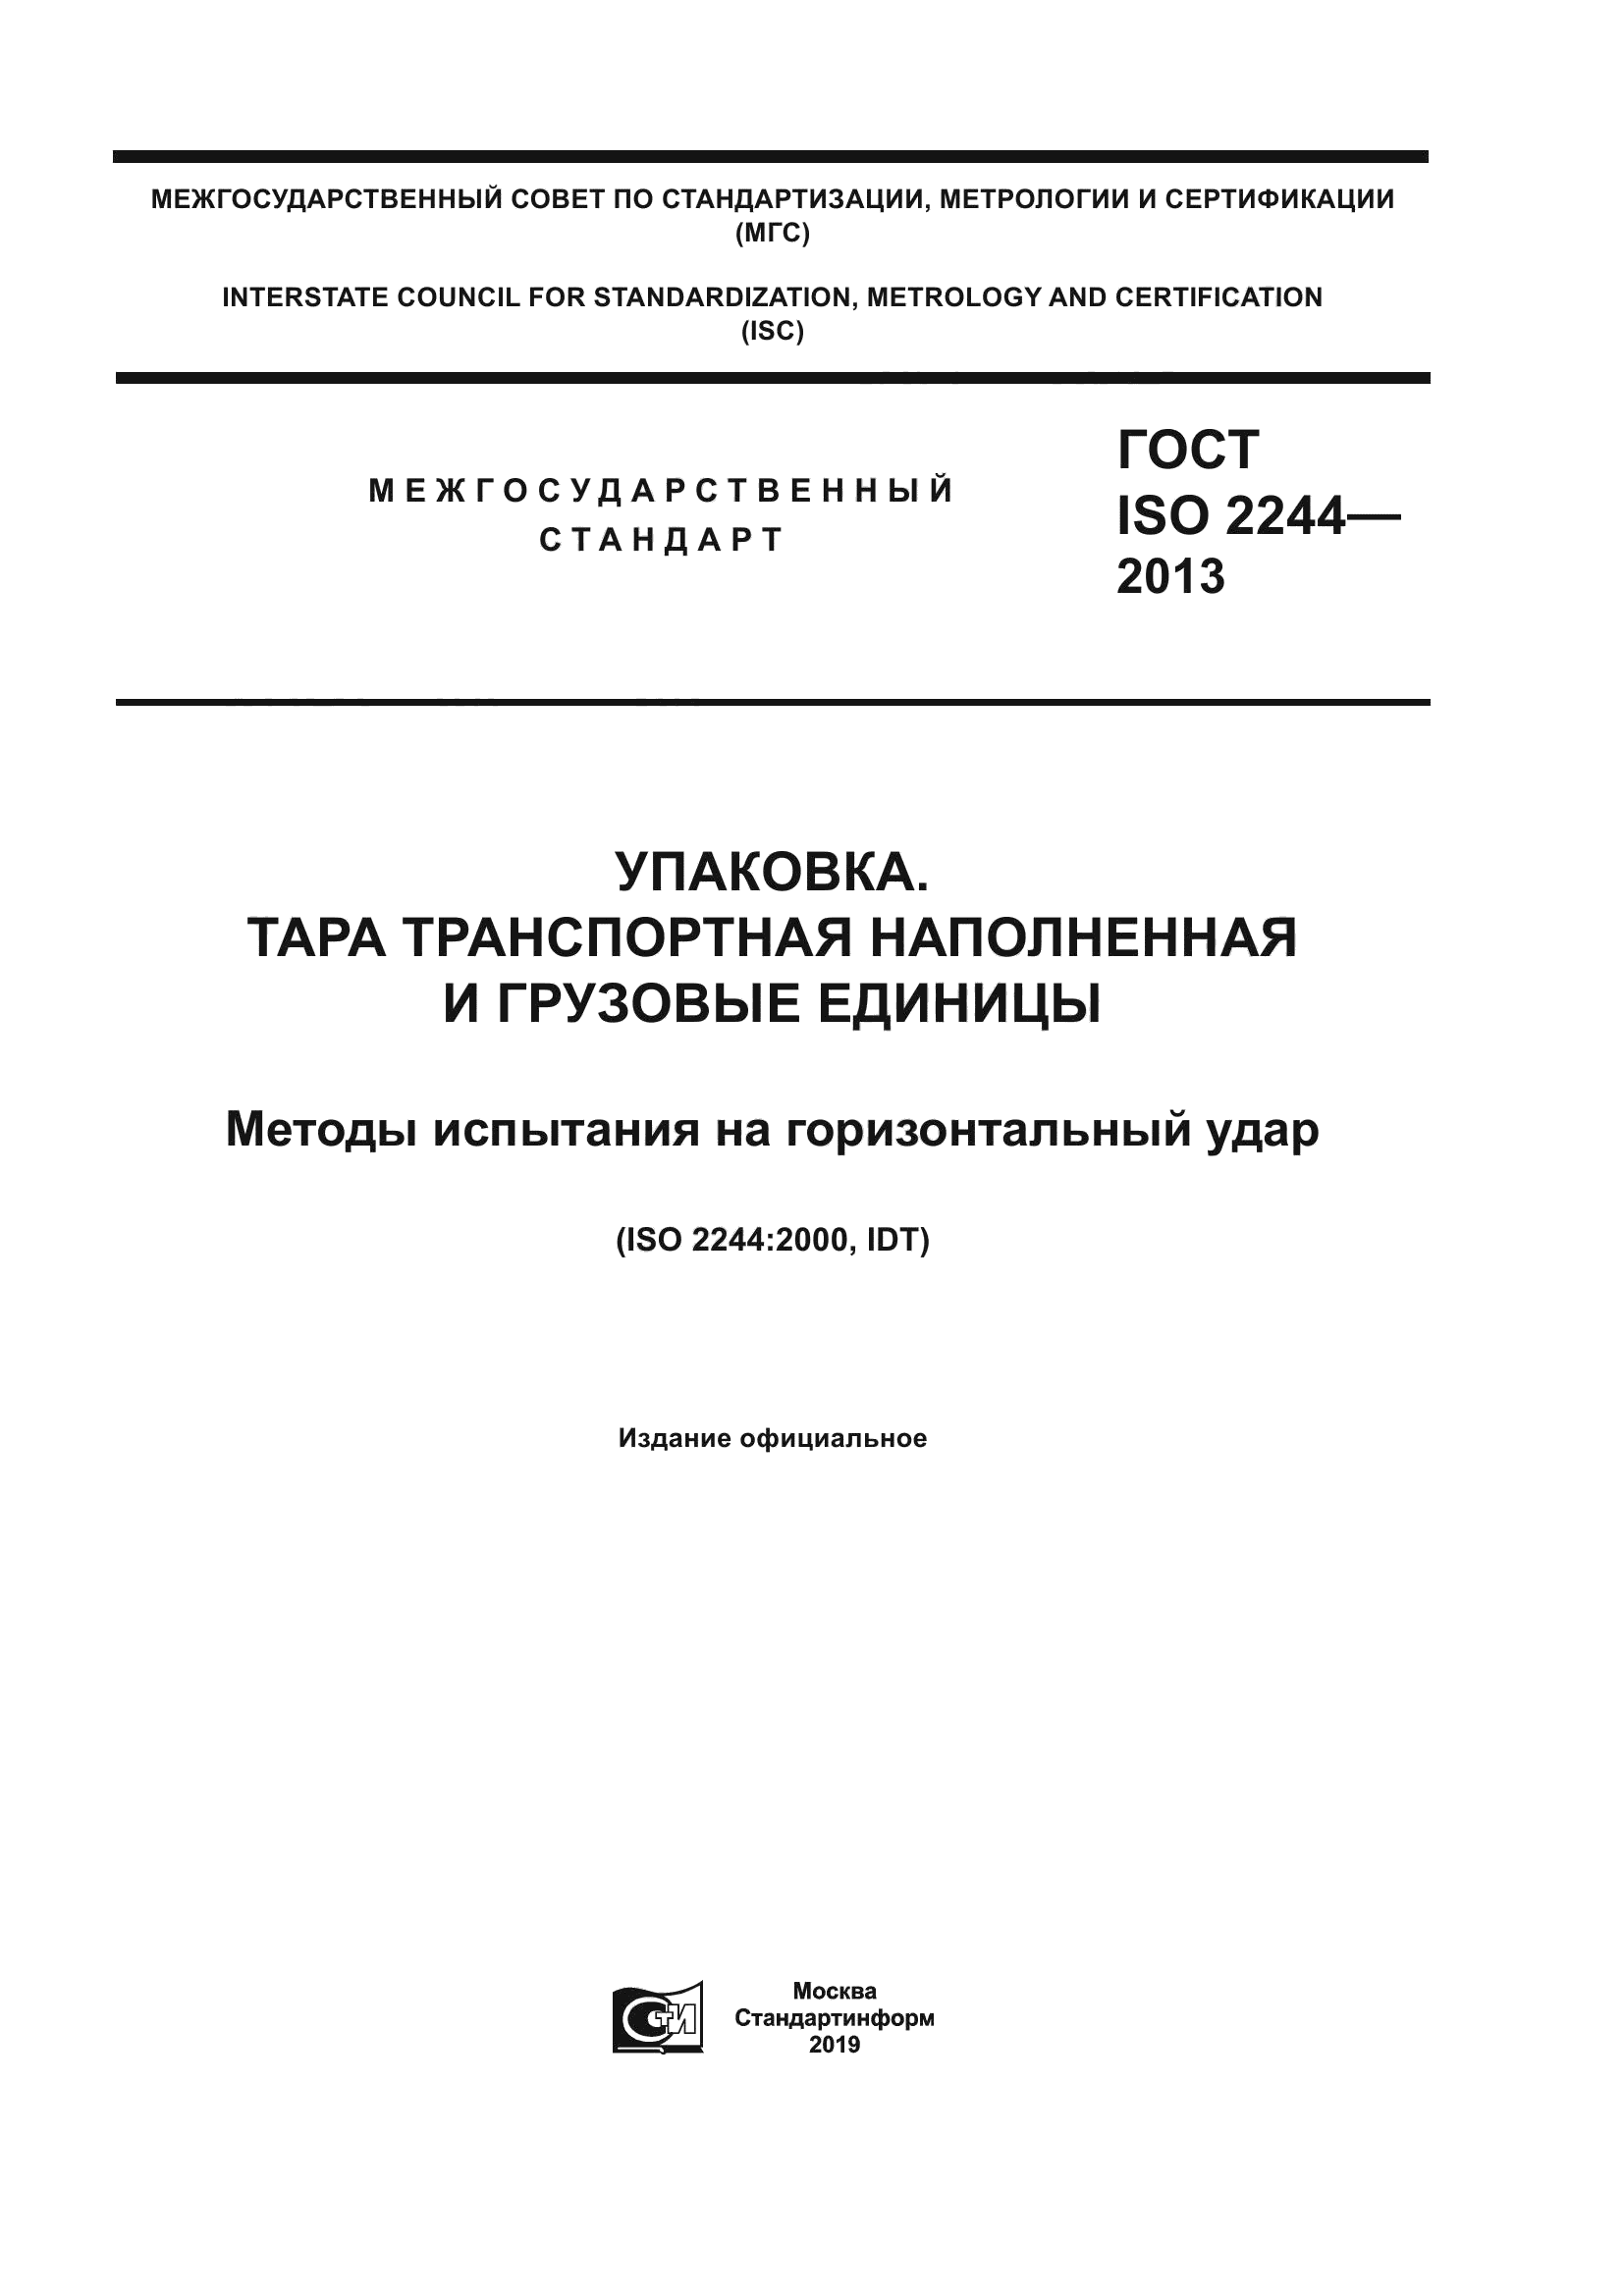 ГОСТ ISO 2244-2013